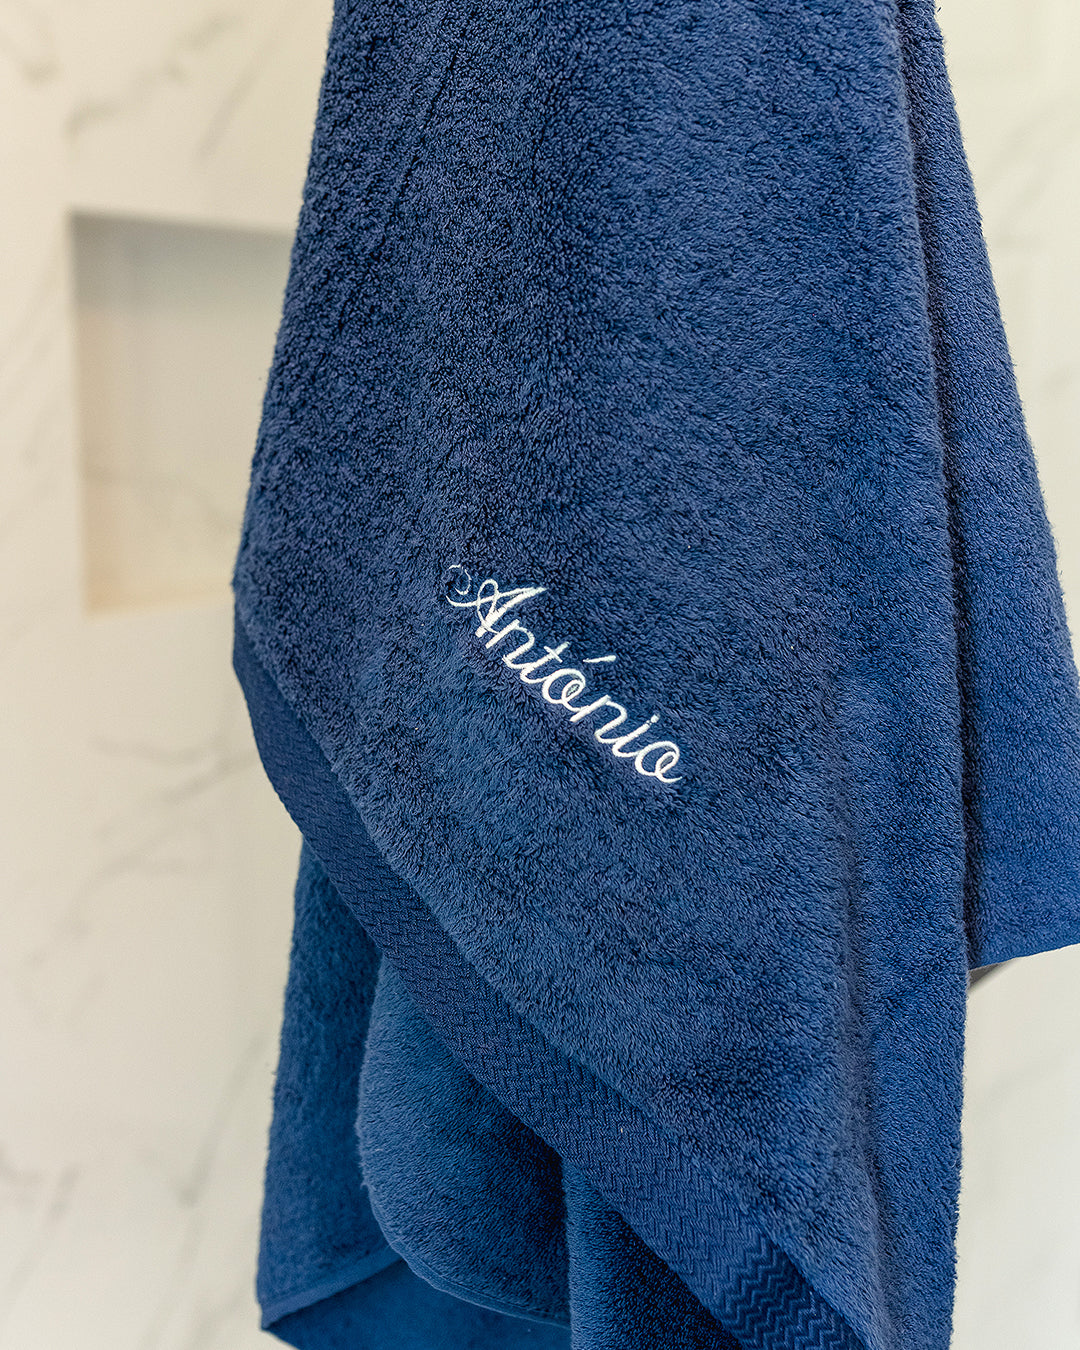 Toalha de Banho Personalizada Azul